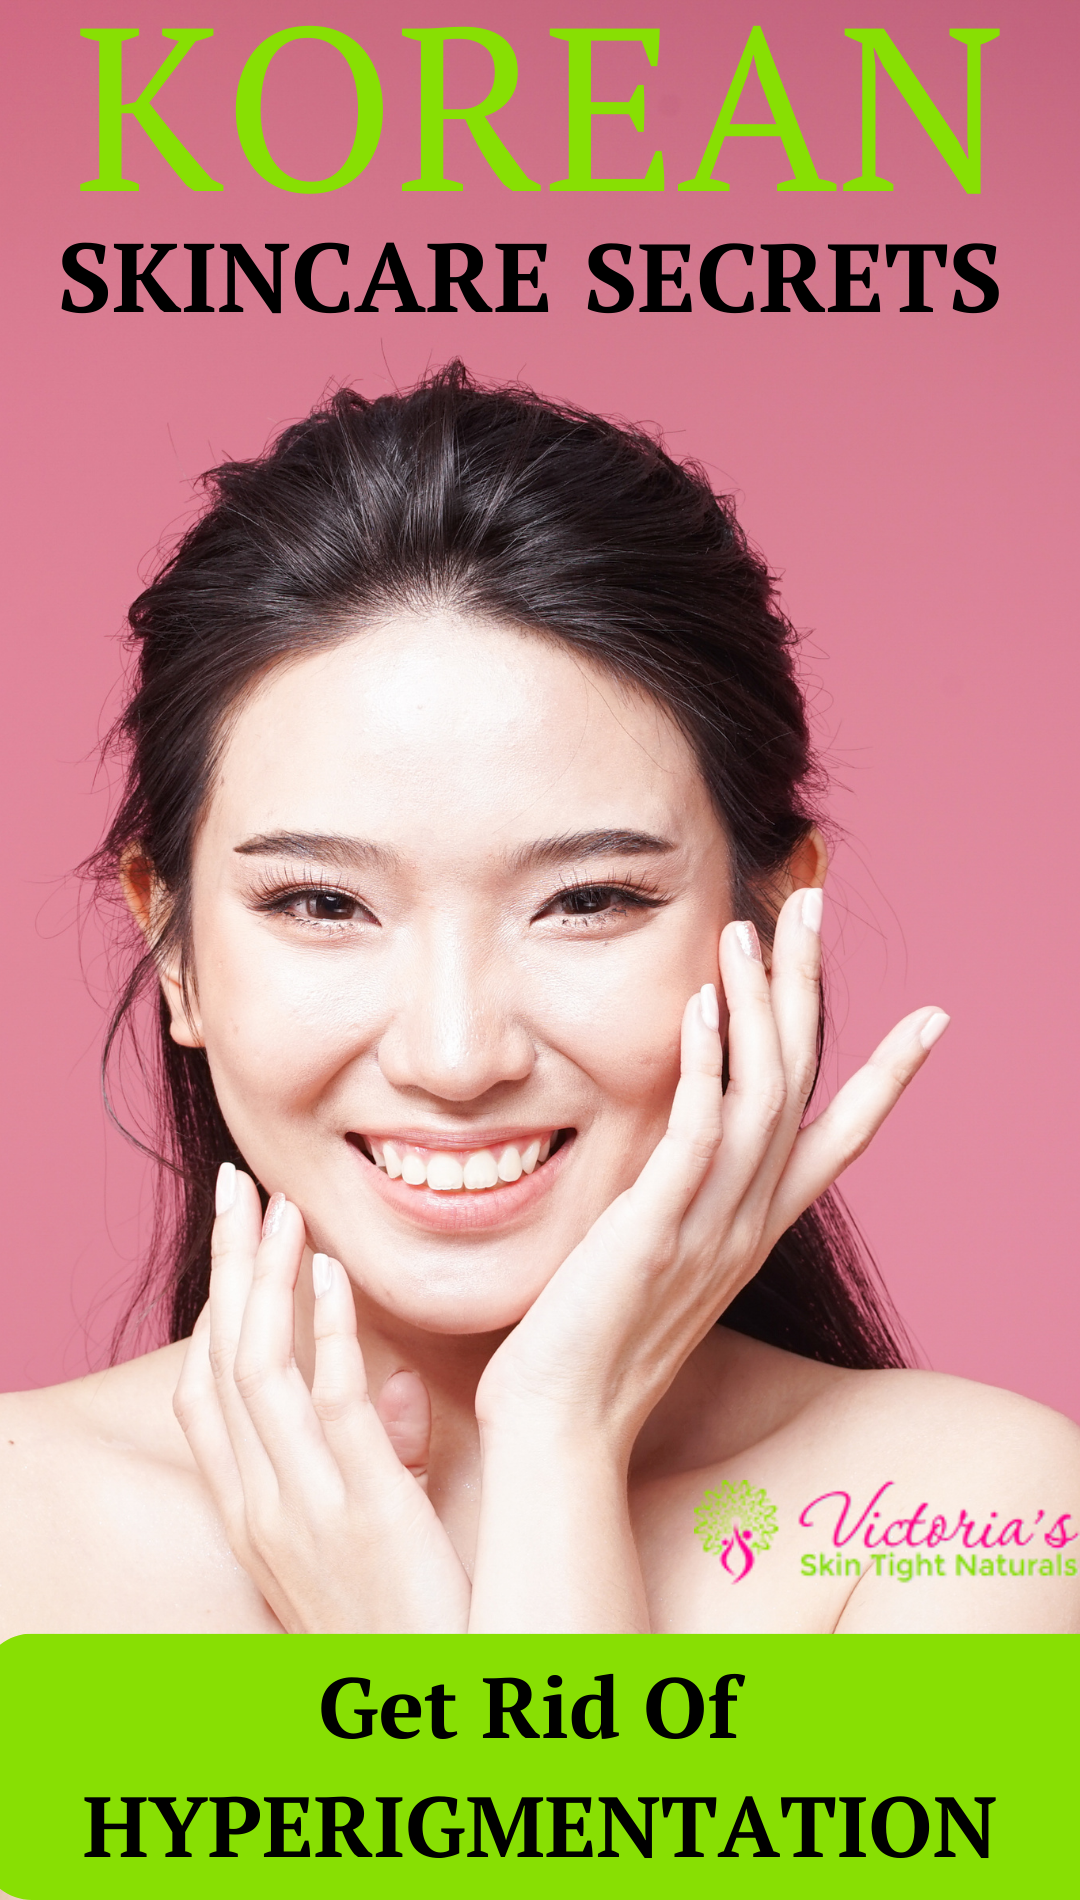 Korean Skincare For Hyperpigmentation